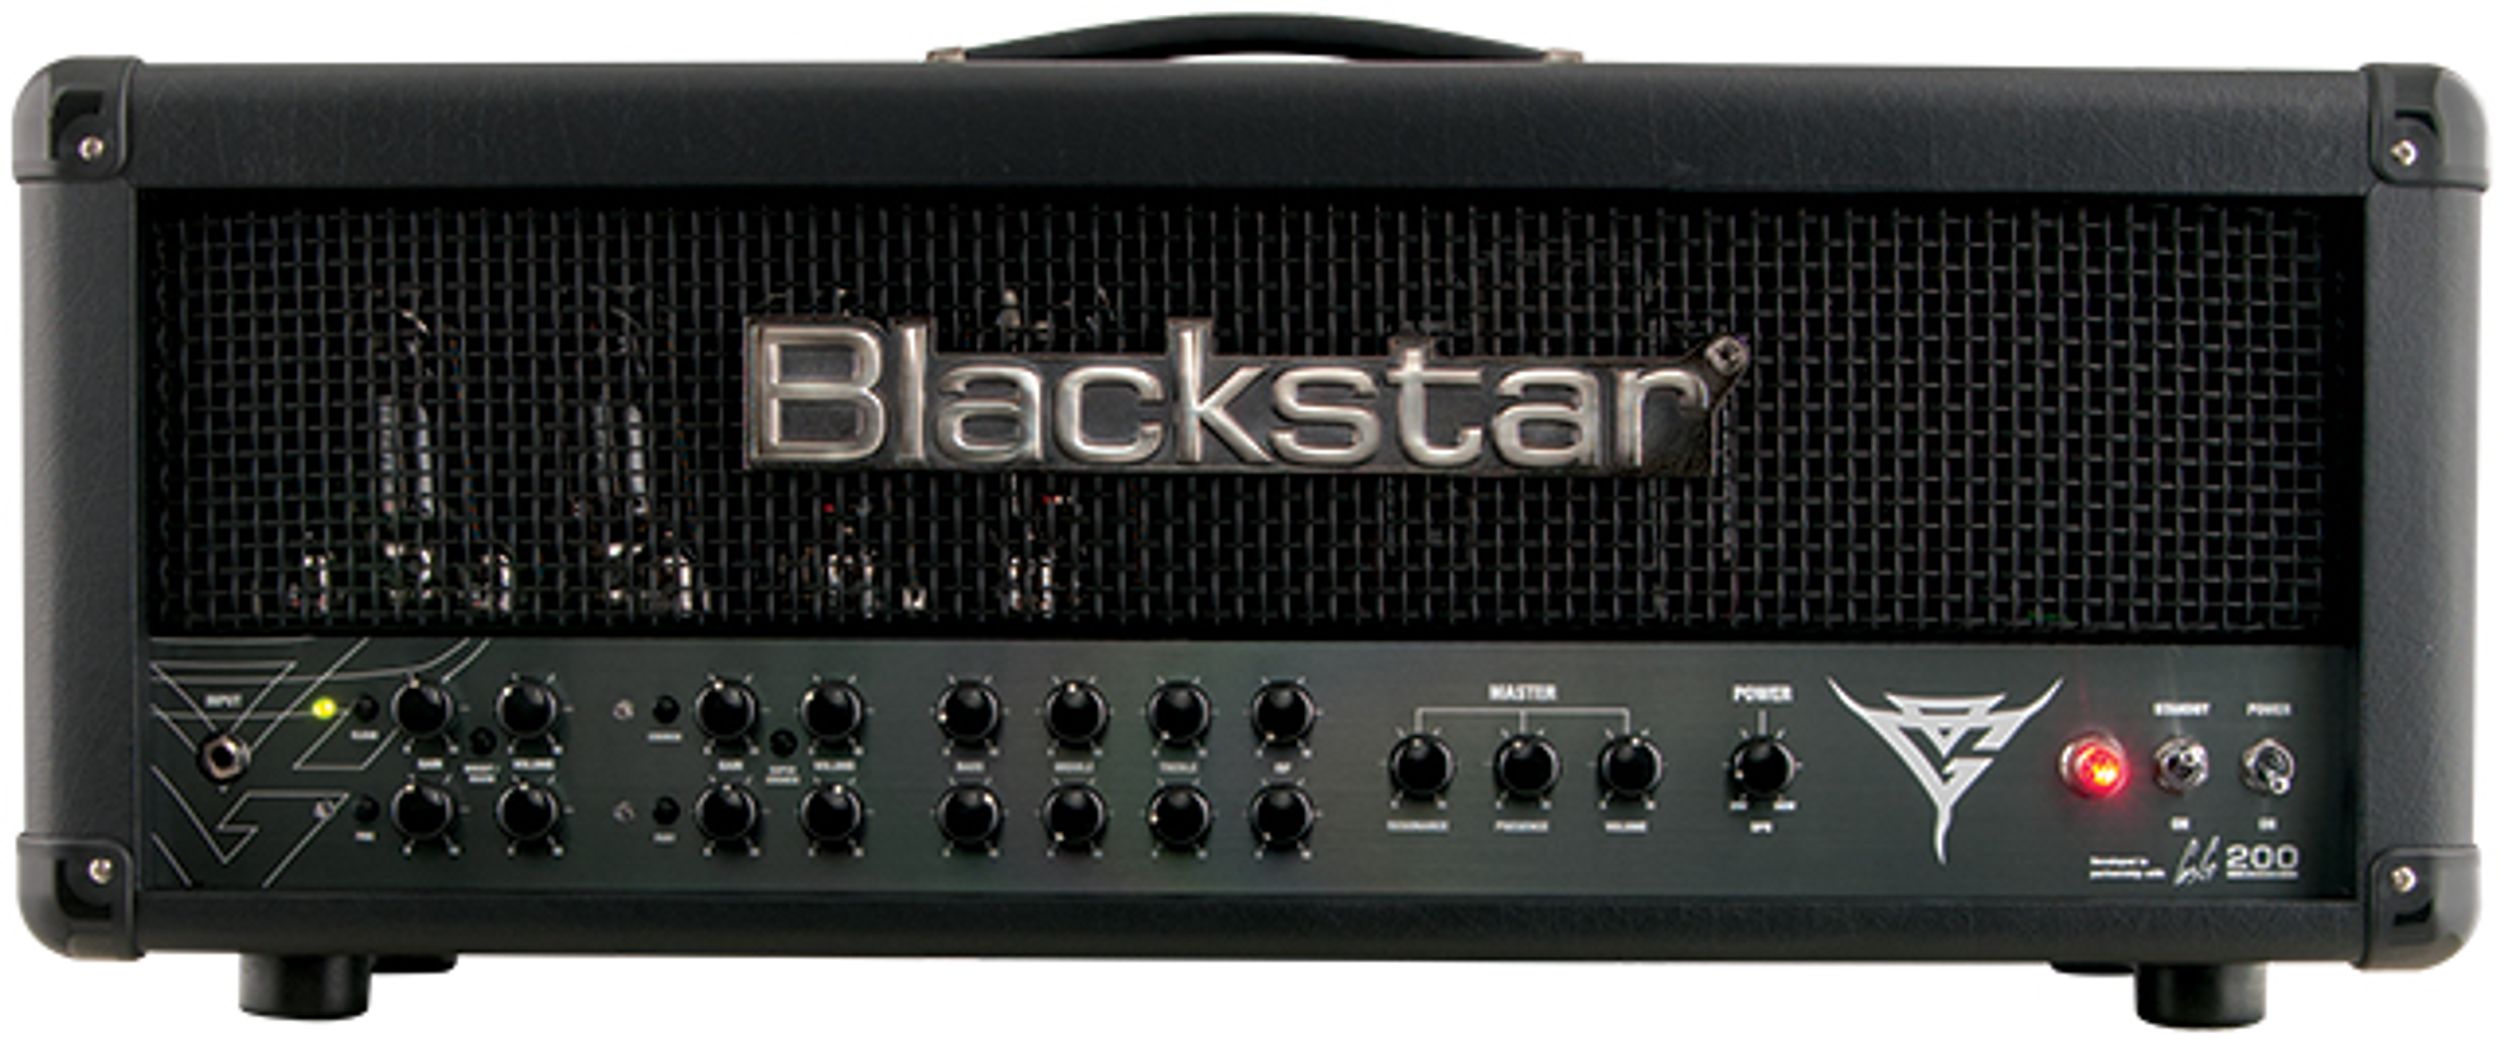 Blackstar Blackfire 200 Amp Review